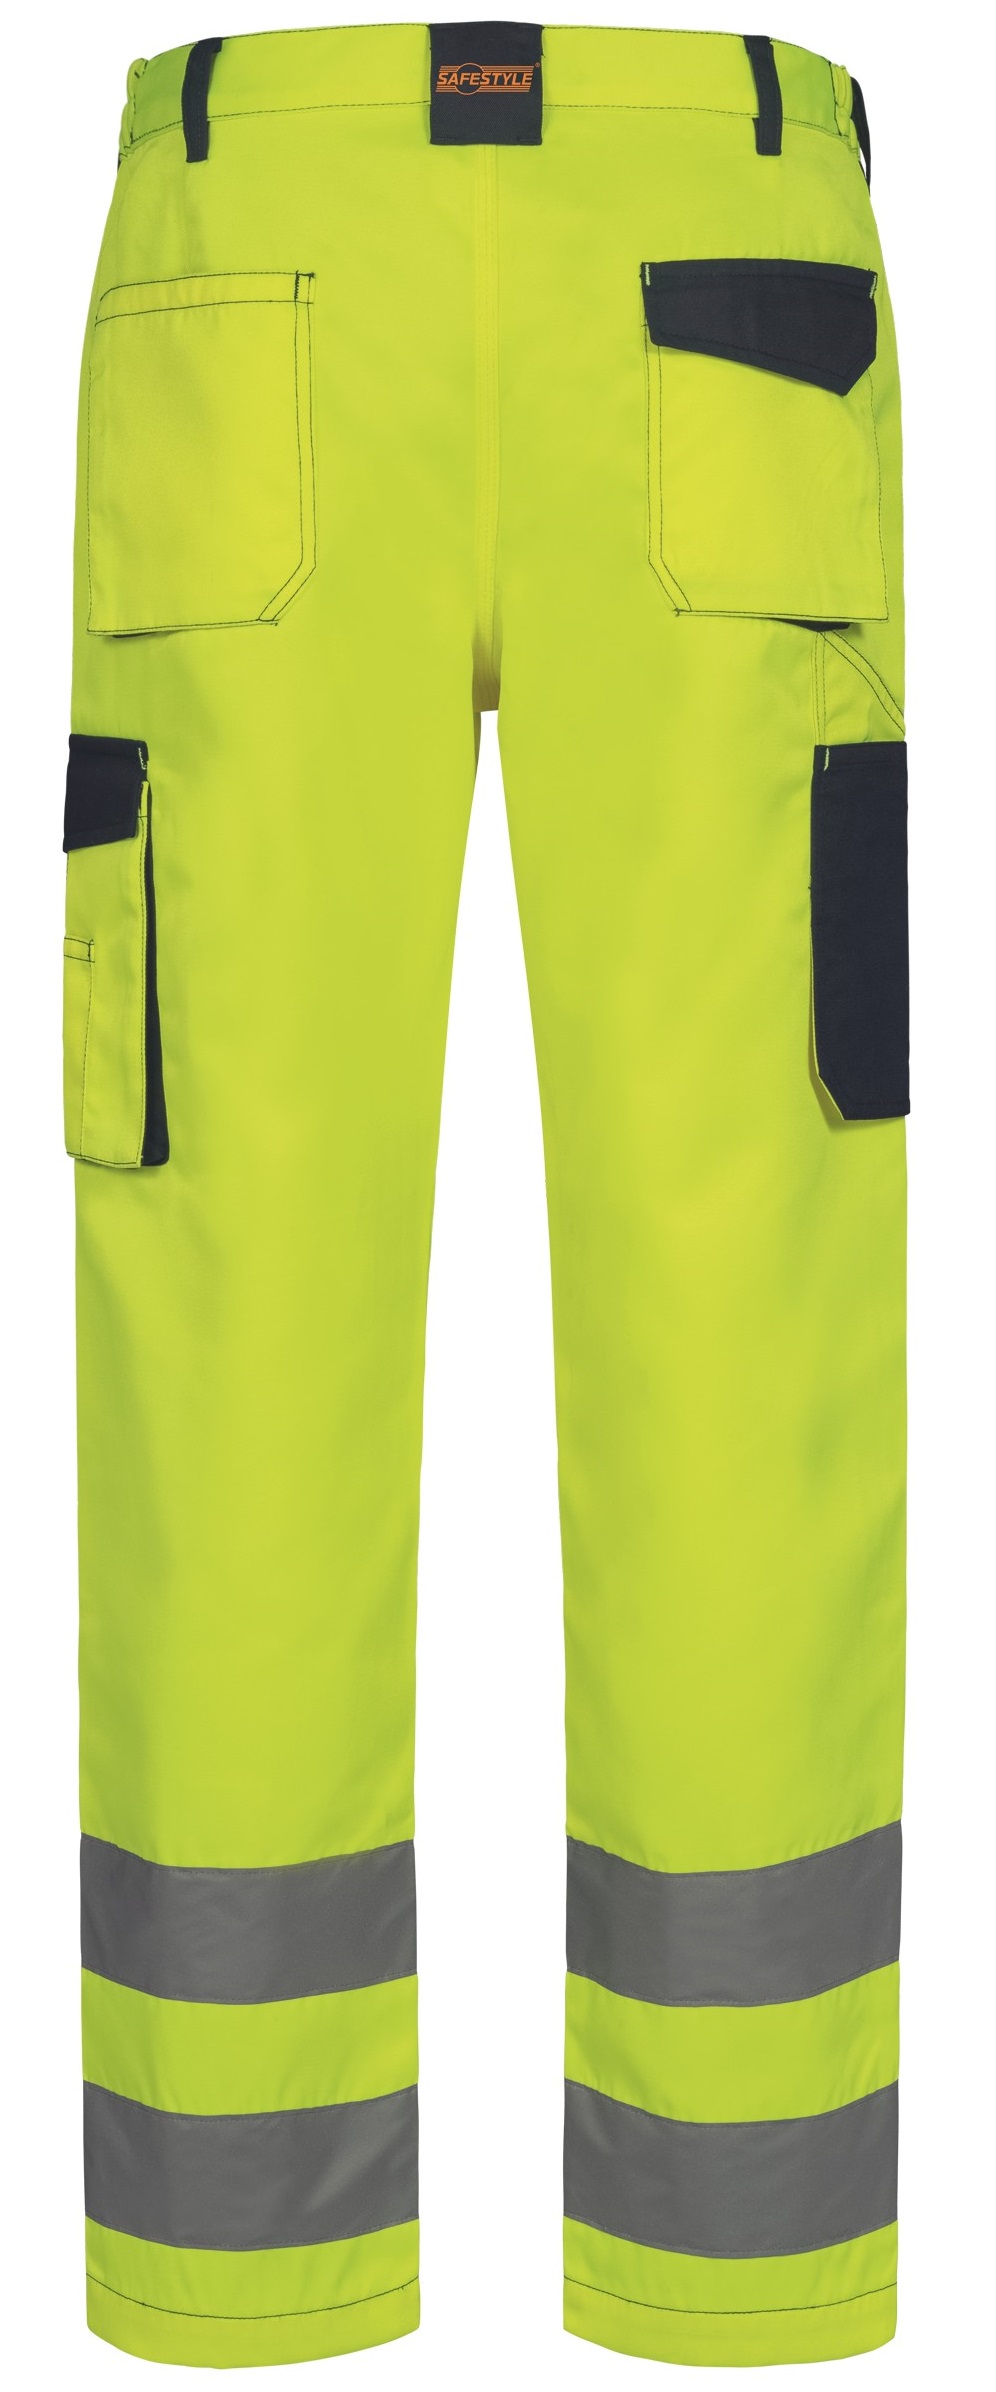 F-Warnschutz-Bundhose, *WERDAU*, gelb/marine